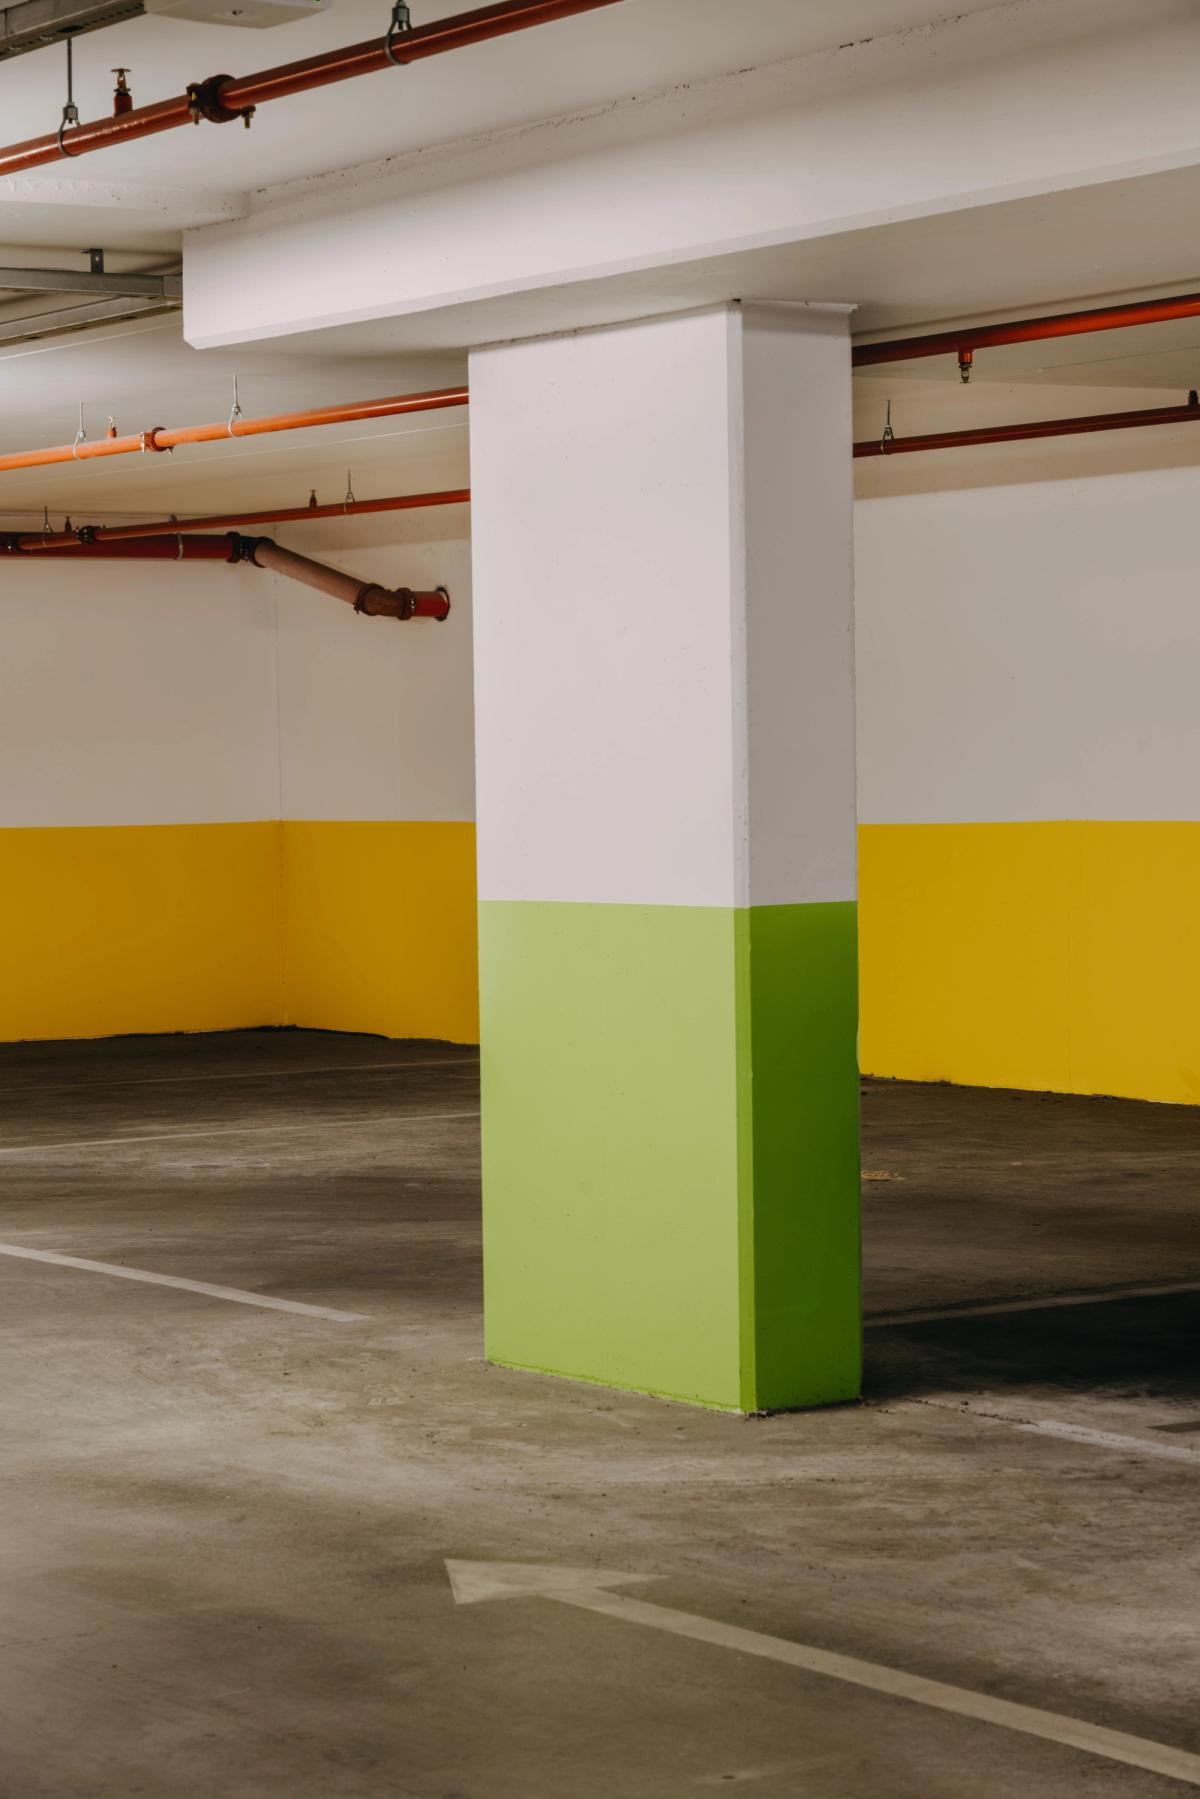 Garasje anlegg med fargemarkering i gult og grønt.